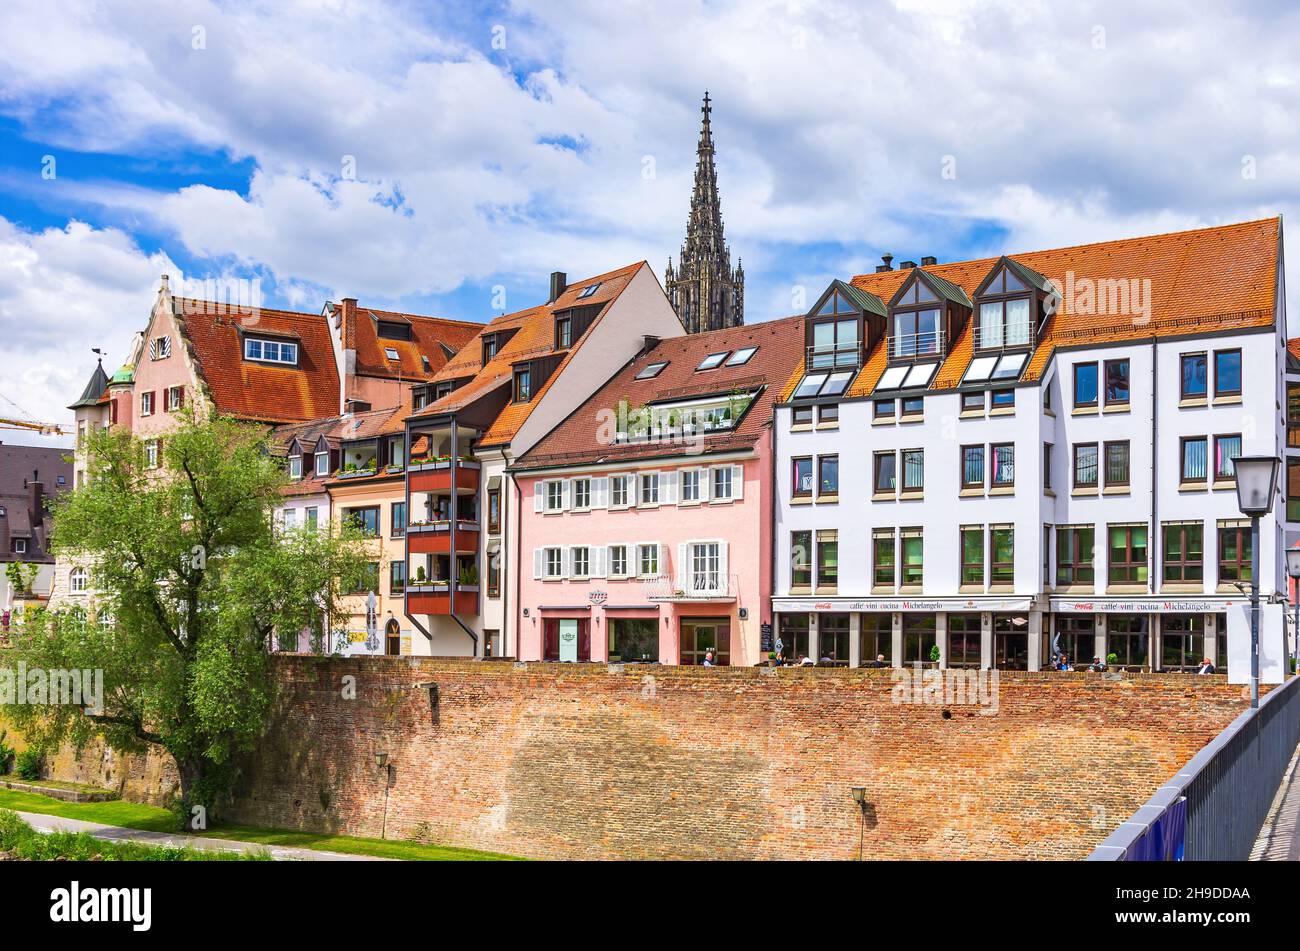 Ulm, Baden-Württemberg, Alemania: Escena de la calle que muestra partes de la histórica orilla del Danubio y la aguja del Minster en el fondo como se ve f Foto de stock